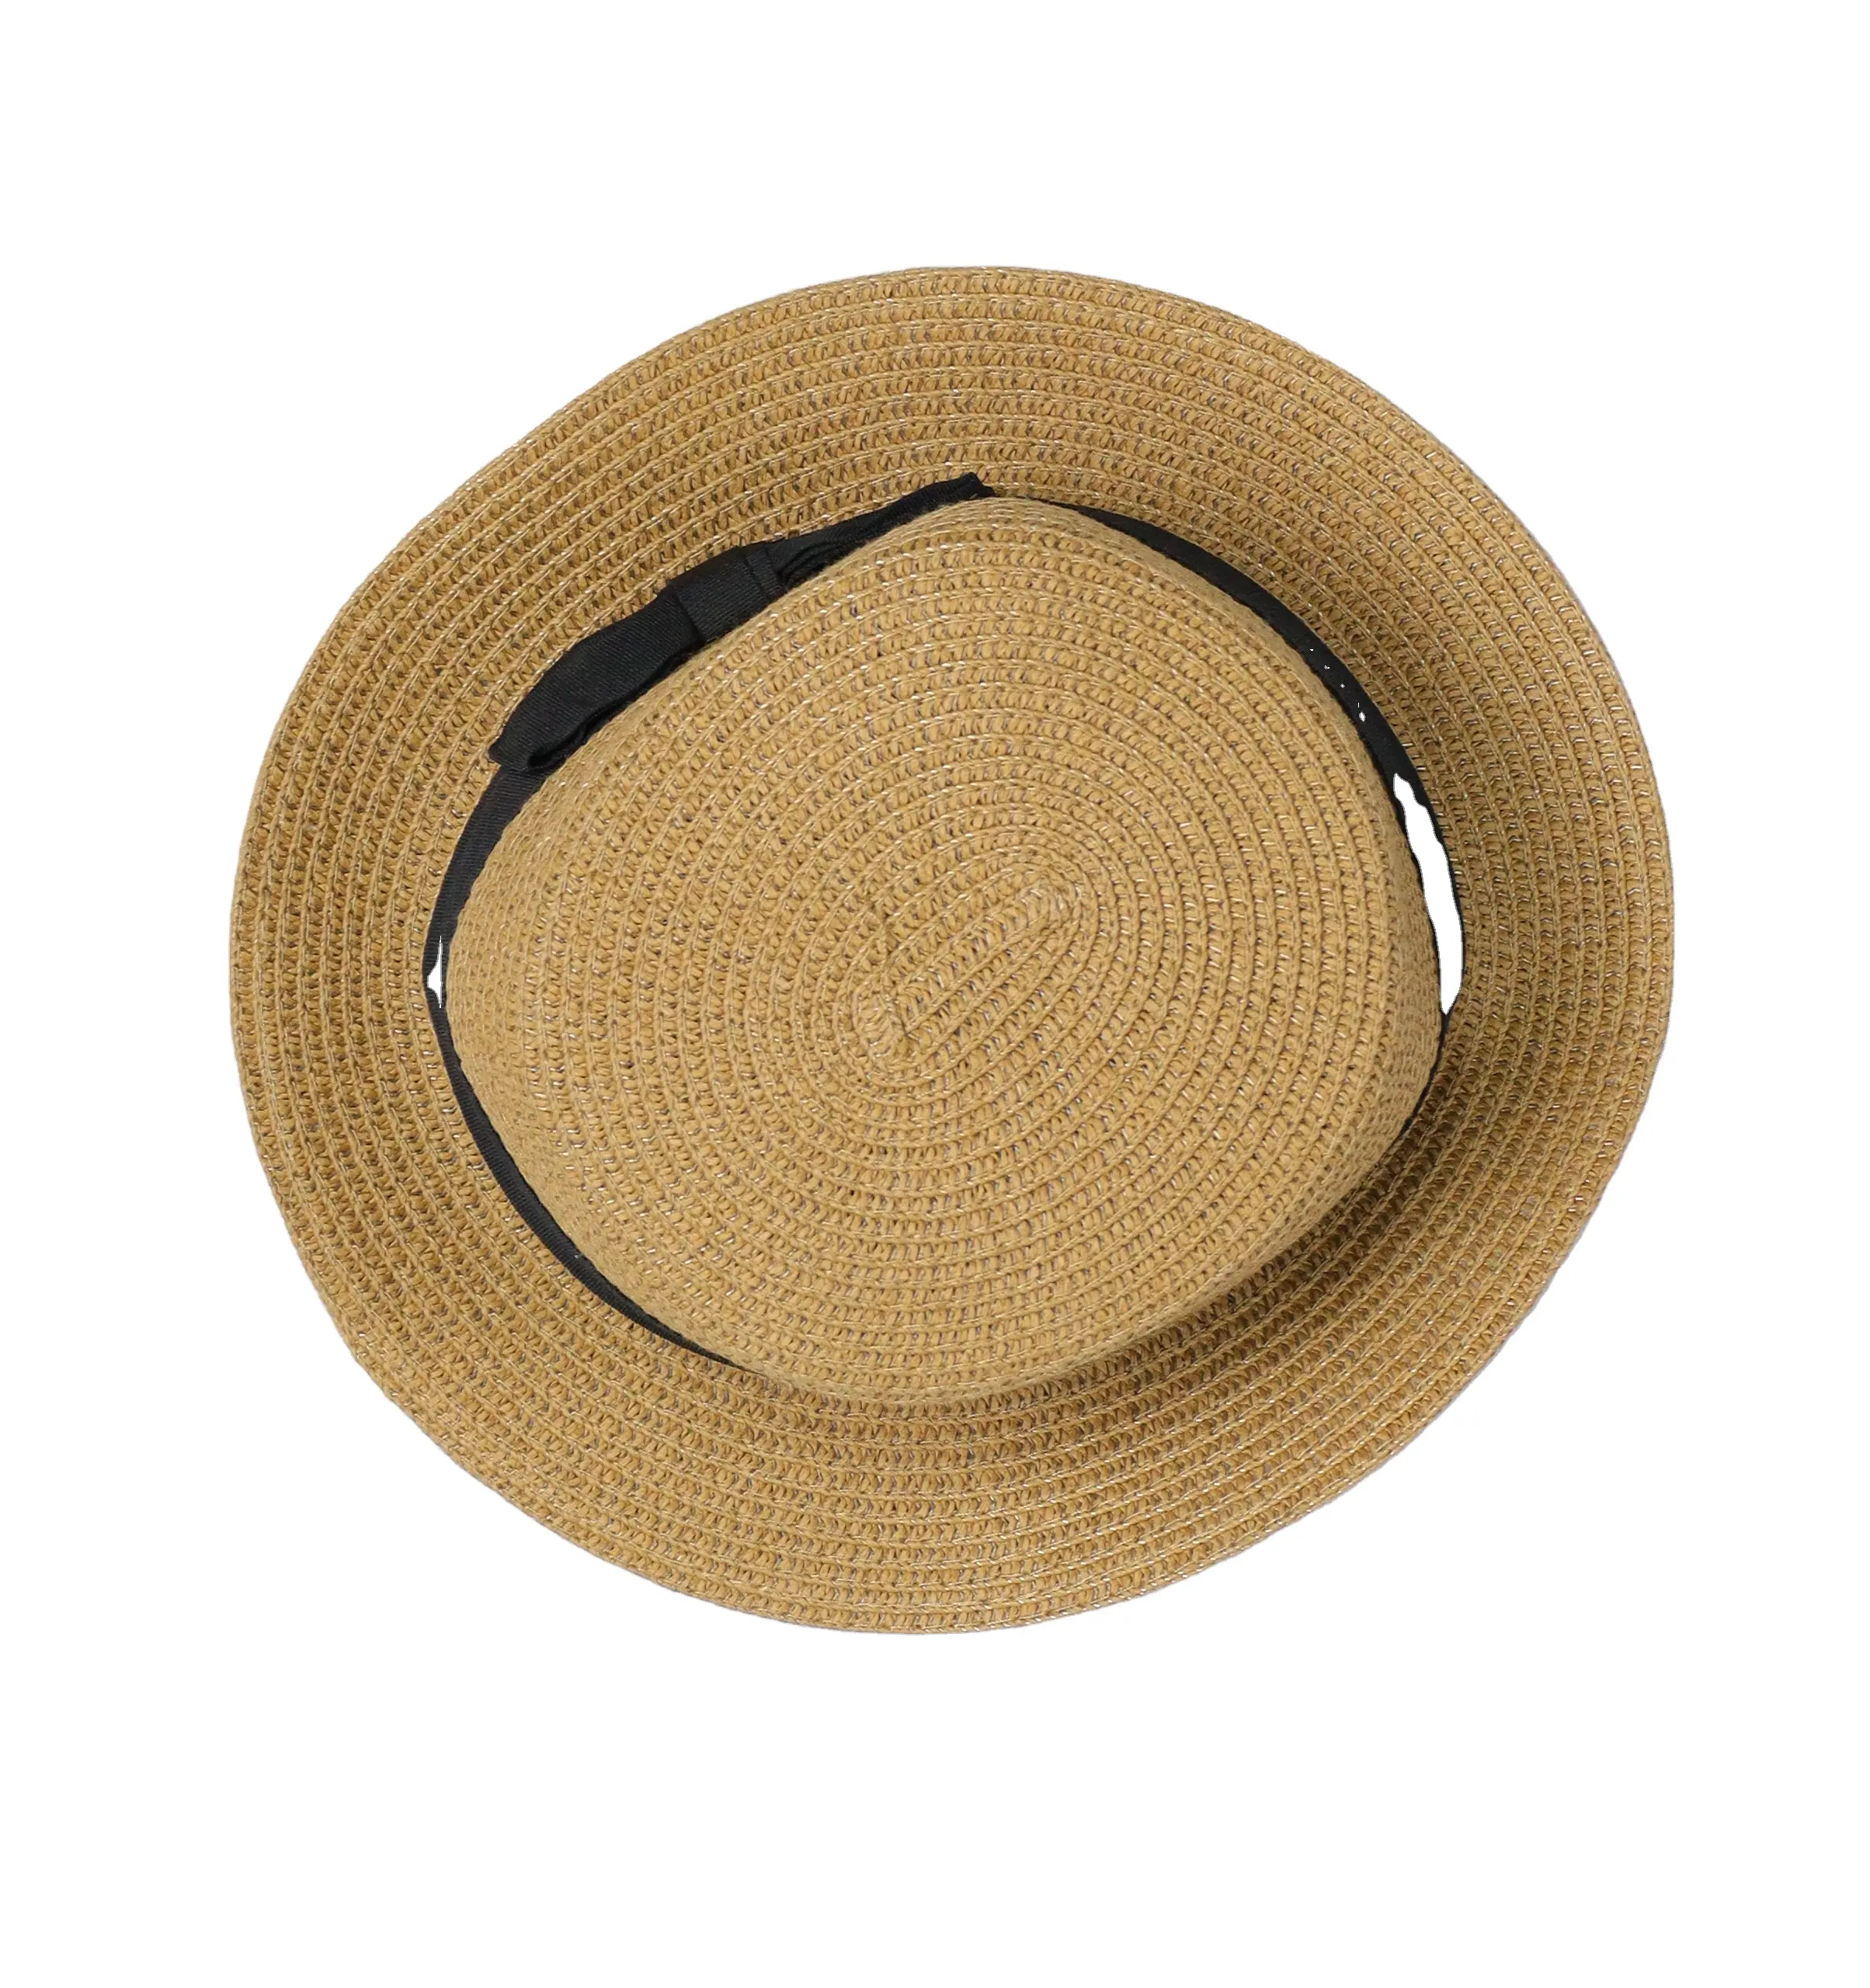 Manifattura a basso prezzo di seconda mano cappello In balle vecchi vestiti vestiti usati